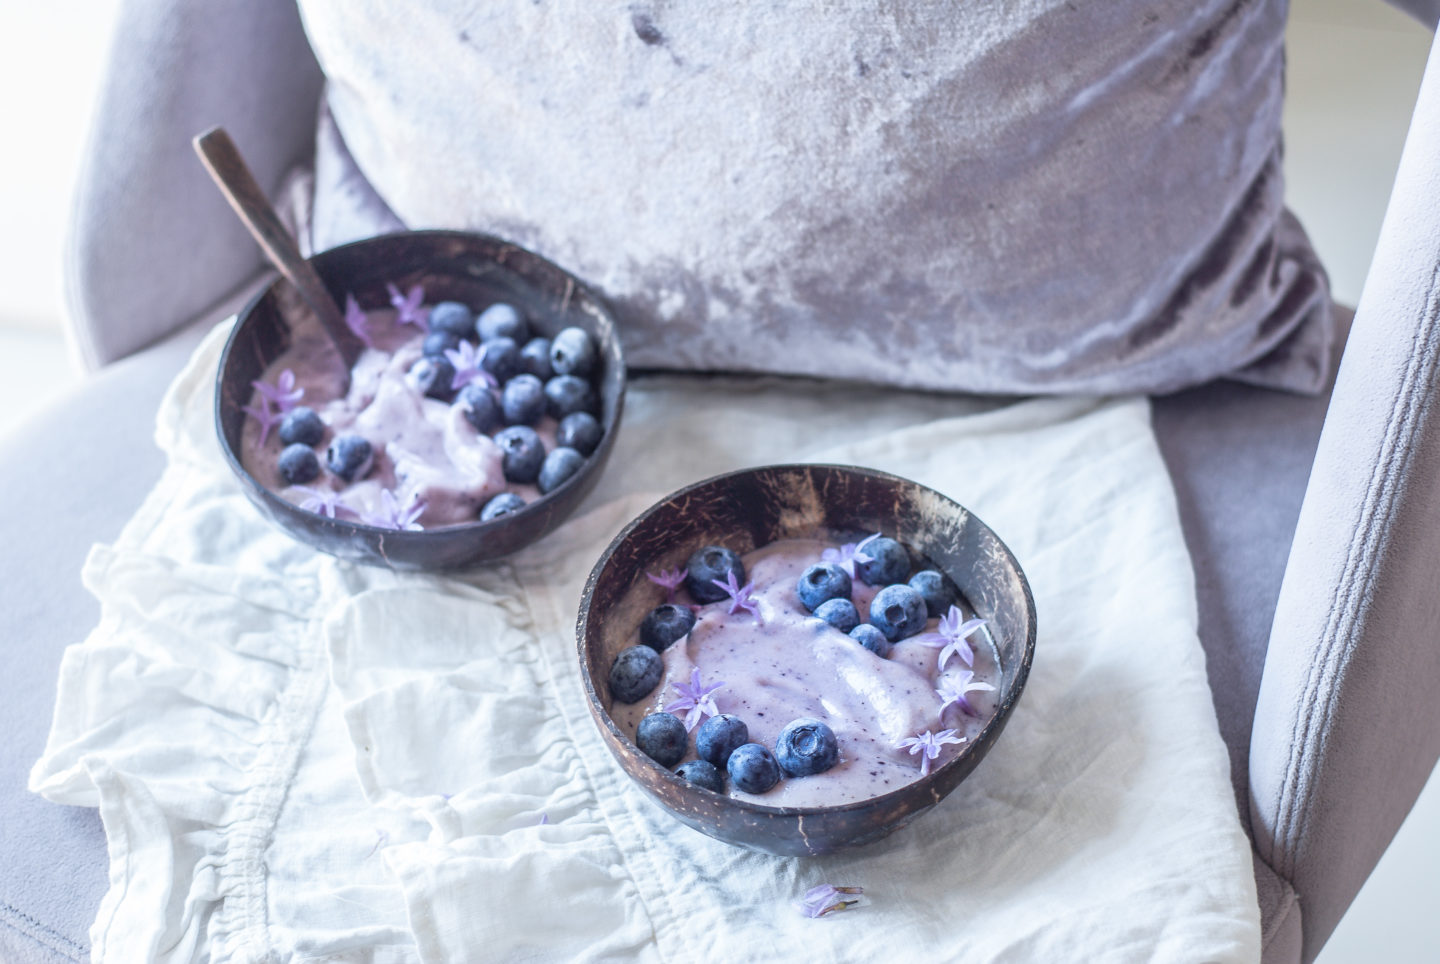 Nicecream· Πως θα κάνεις το παγωτό φρούτων ακόμη πιο υγιεινό